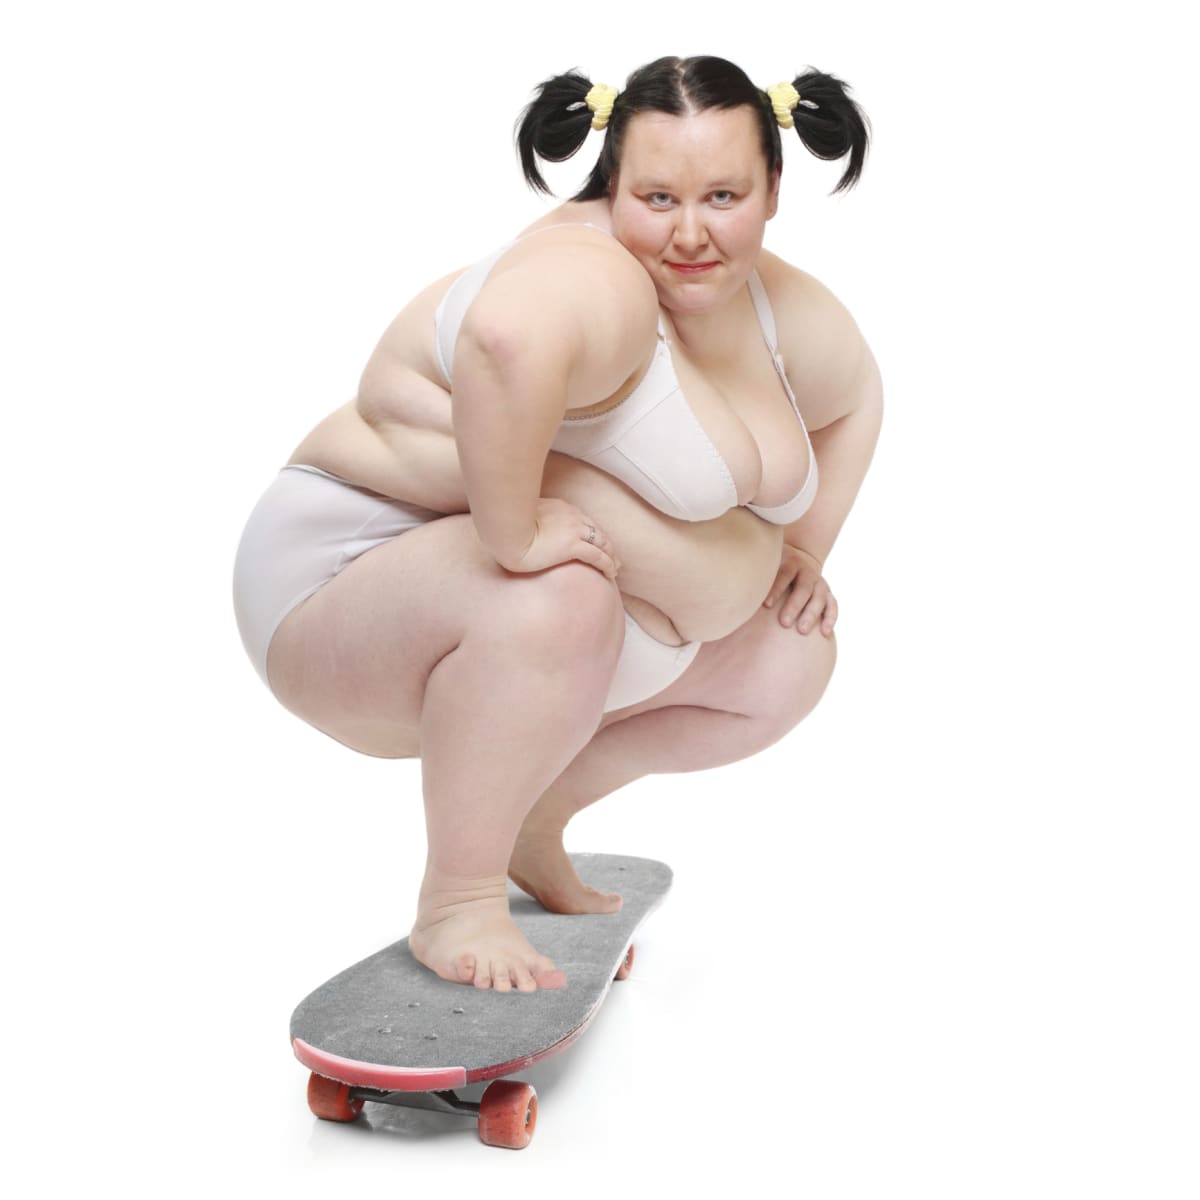 Obézní ženy mají větší problémy než obézní muži